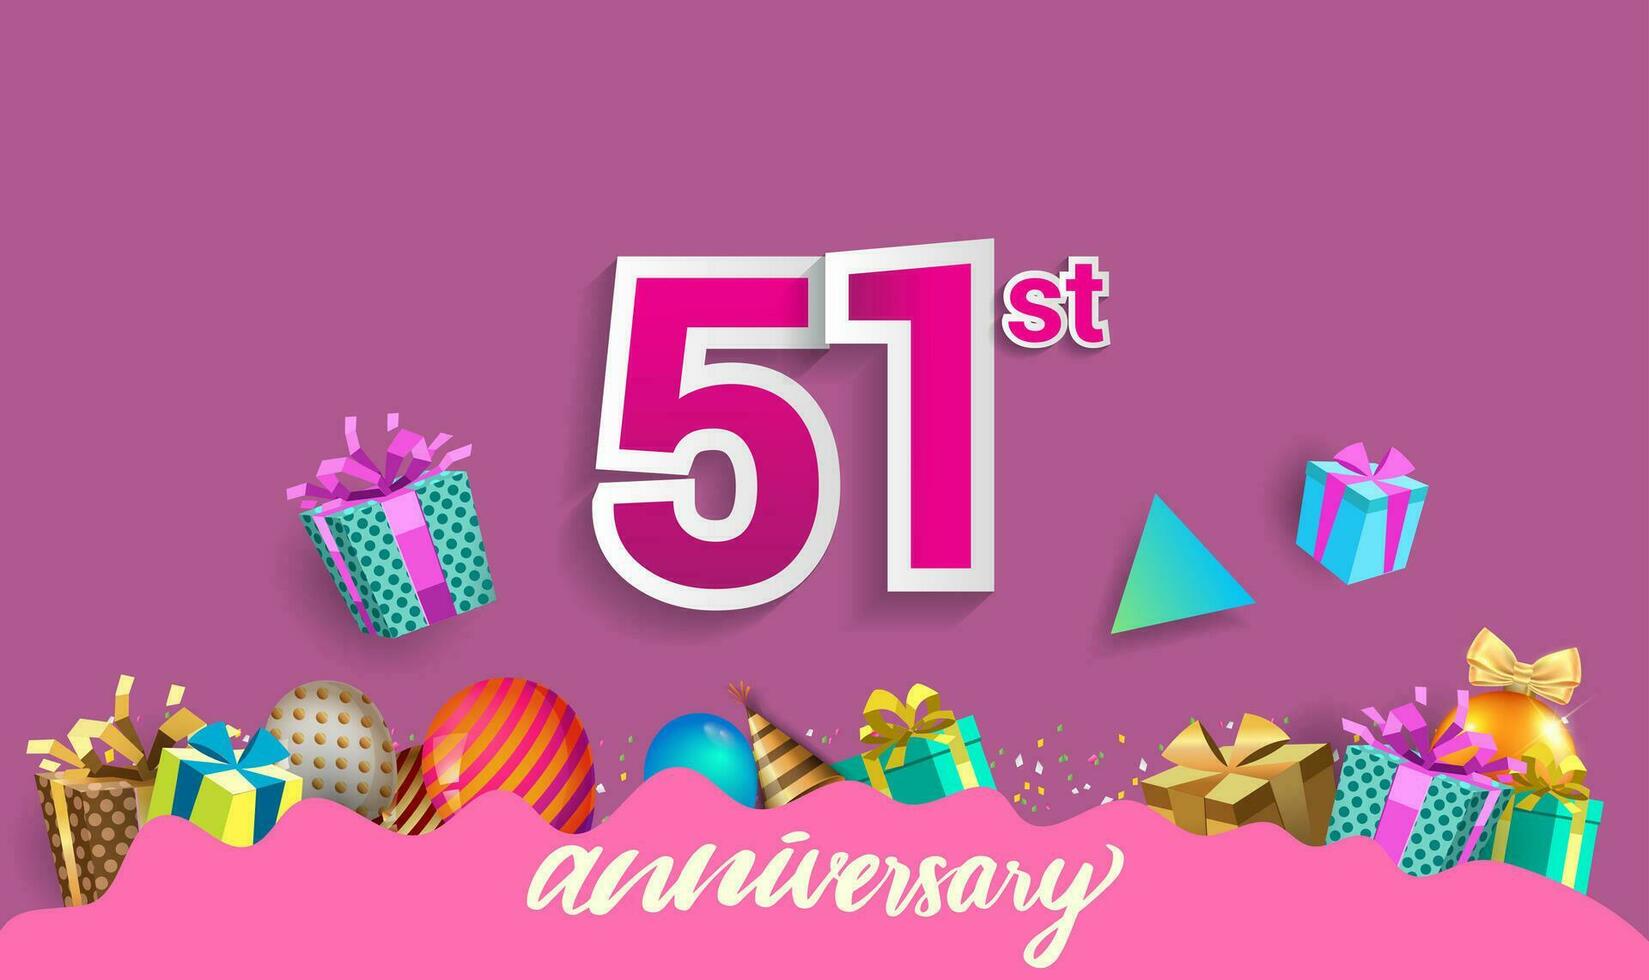 51st anni anniversario celebrazione disegno, con regalo scatola e palloncini, nastro, colorato vettore modello elementi per il tuo compleanno festeggiare festa.